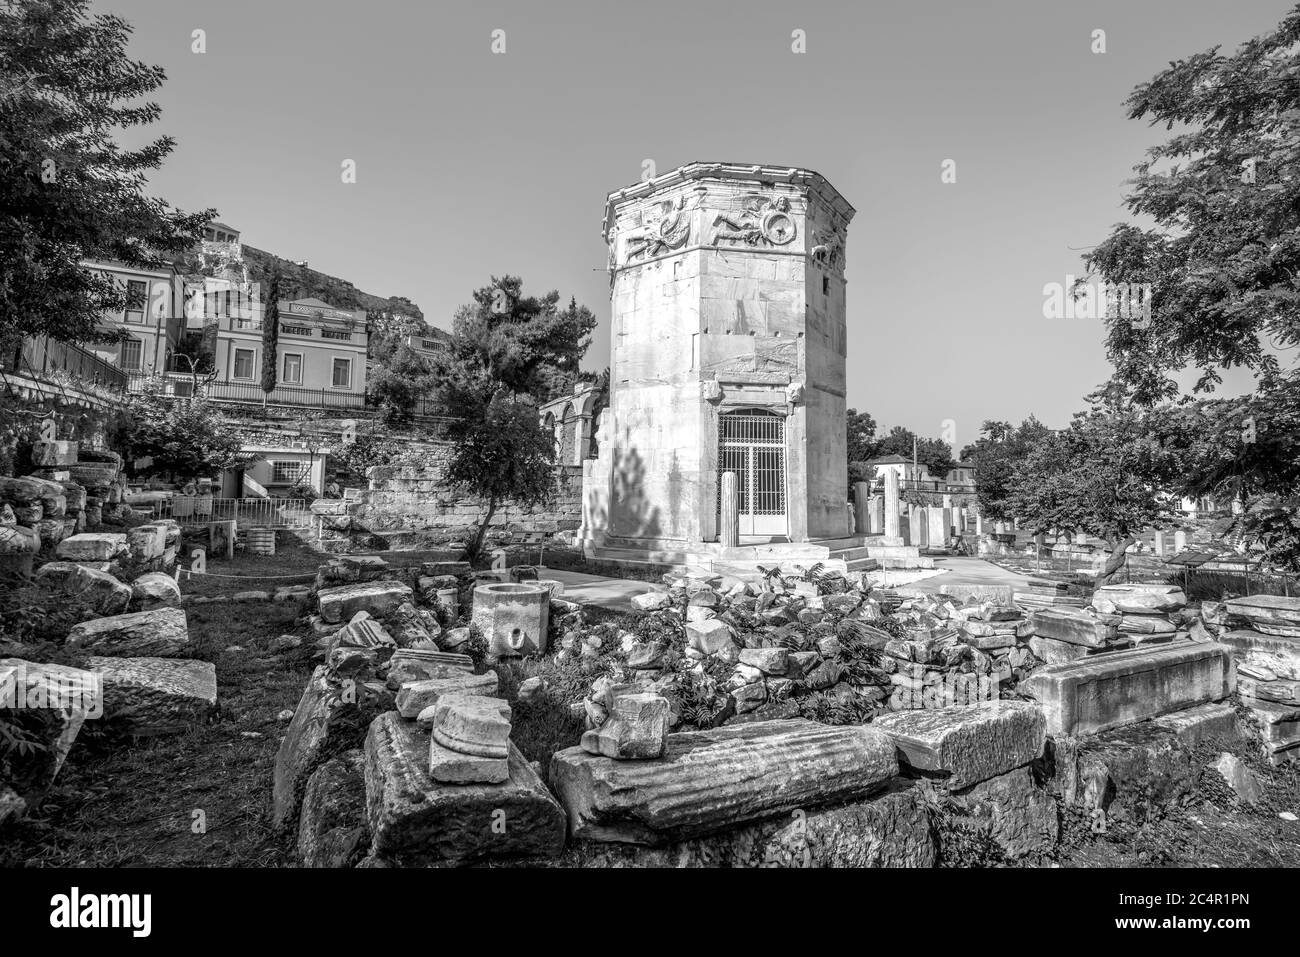 Tour des vents ou des Aerides sur l'Agora romaine, Athènes, Grèce. C'est l'un des principaux monuments d'Athènes. Paysage des ruines grecques anciennes dans le centre A d'Athènes Banque D'Images